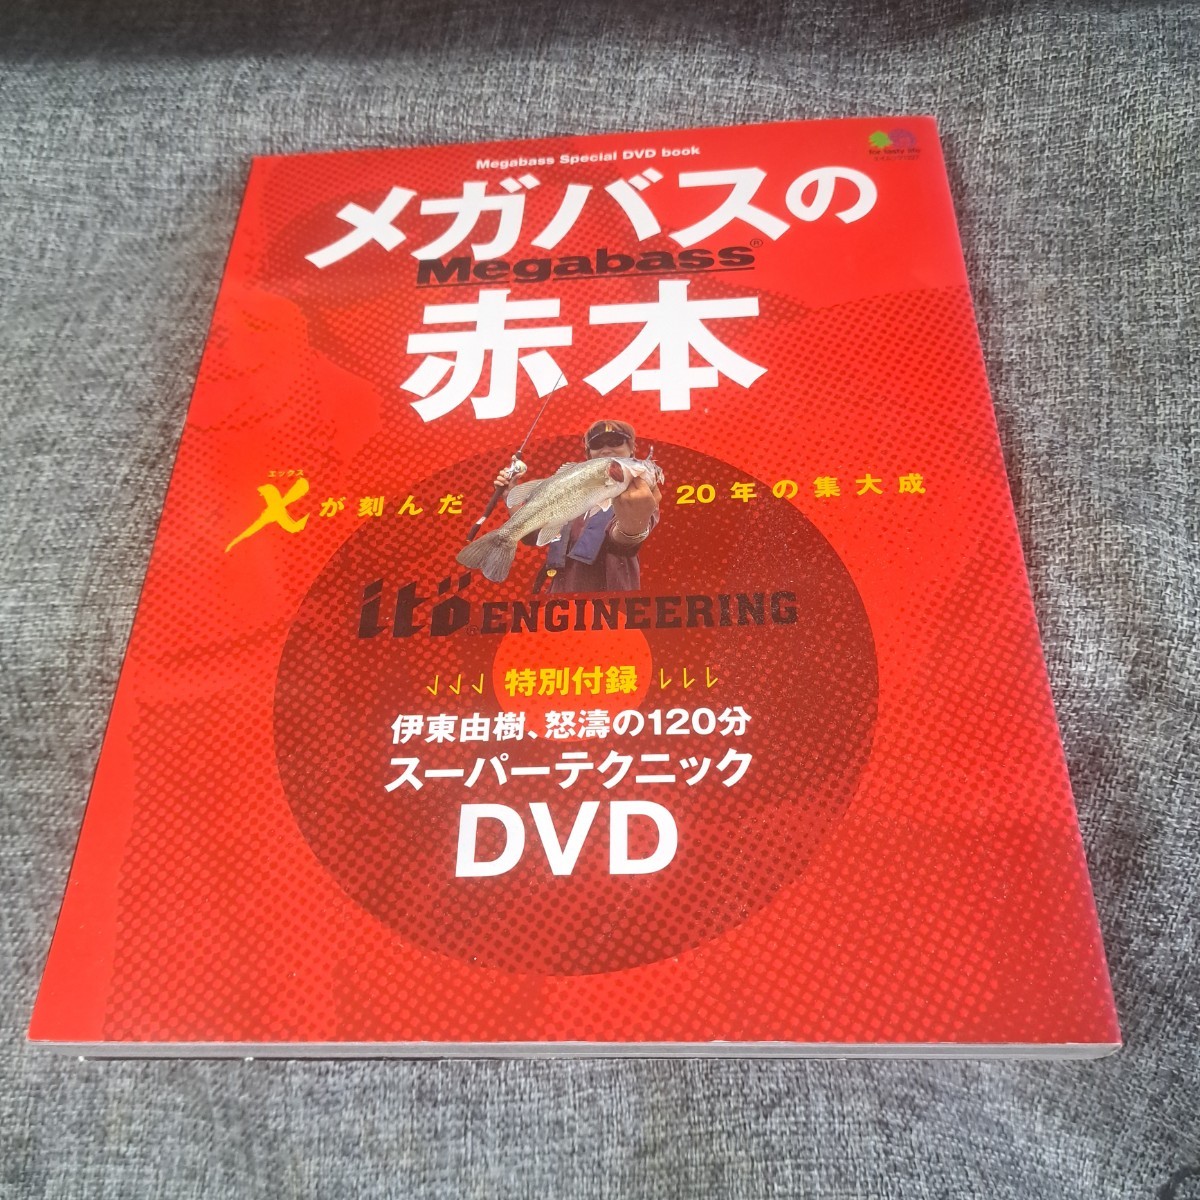 メガバスの赤本 : Megabass special DVD book